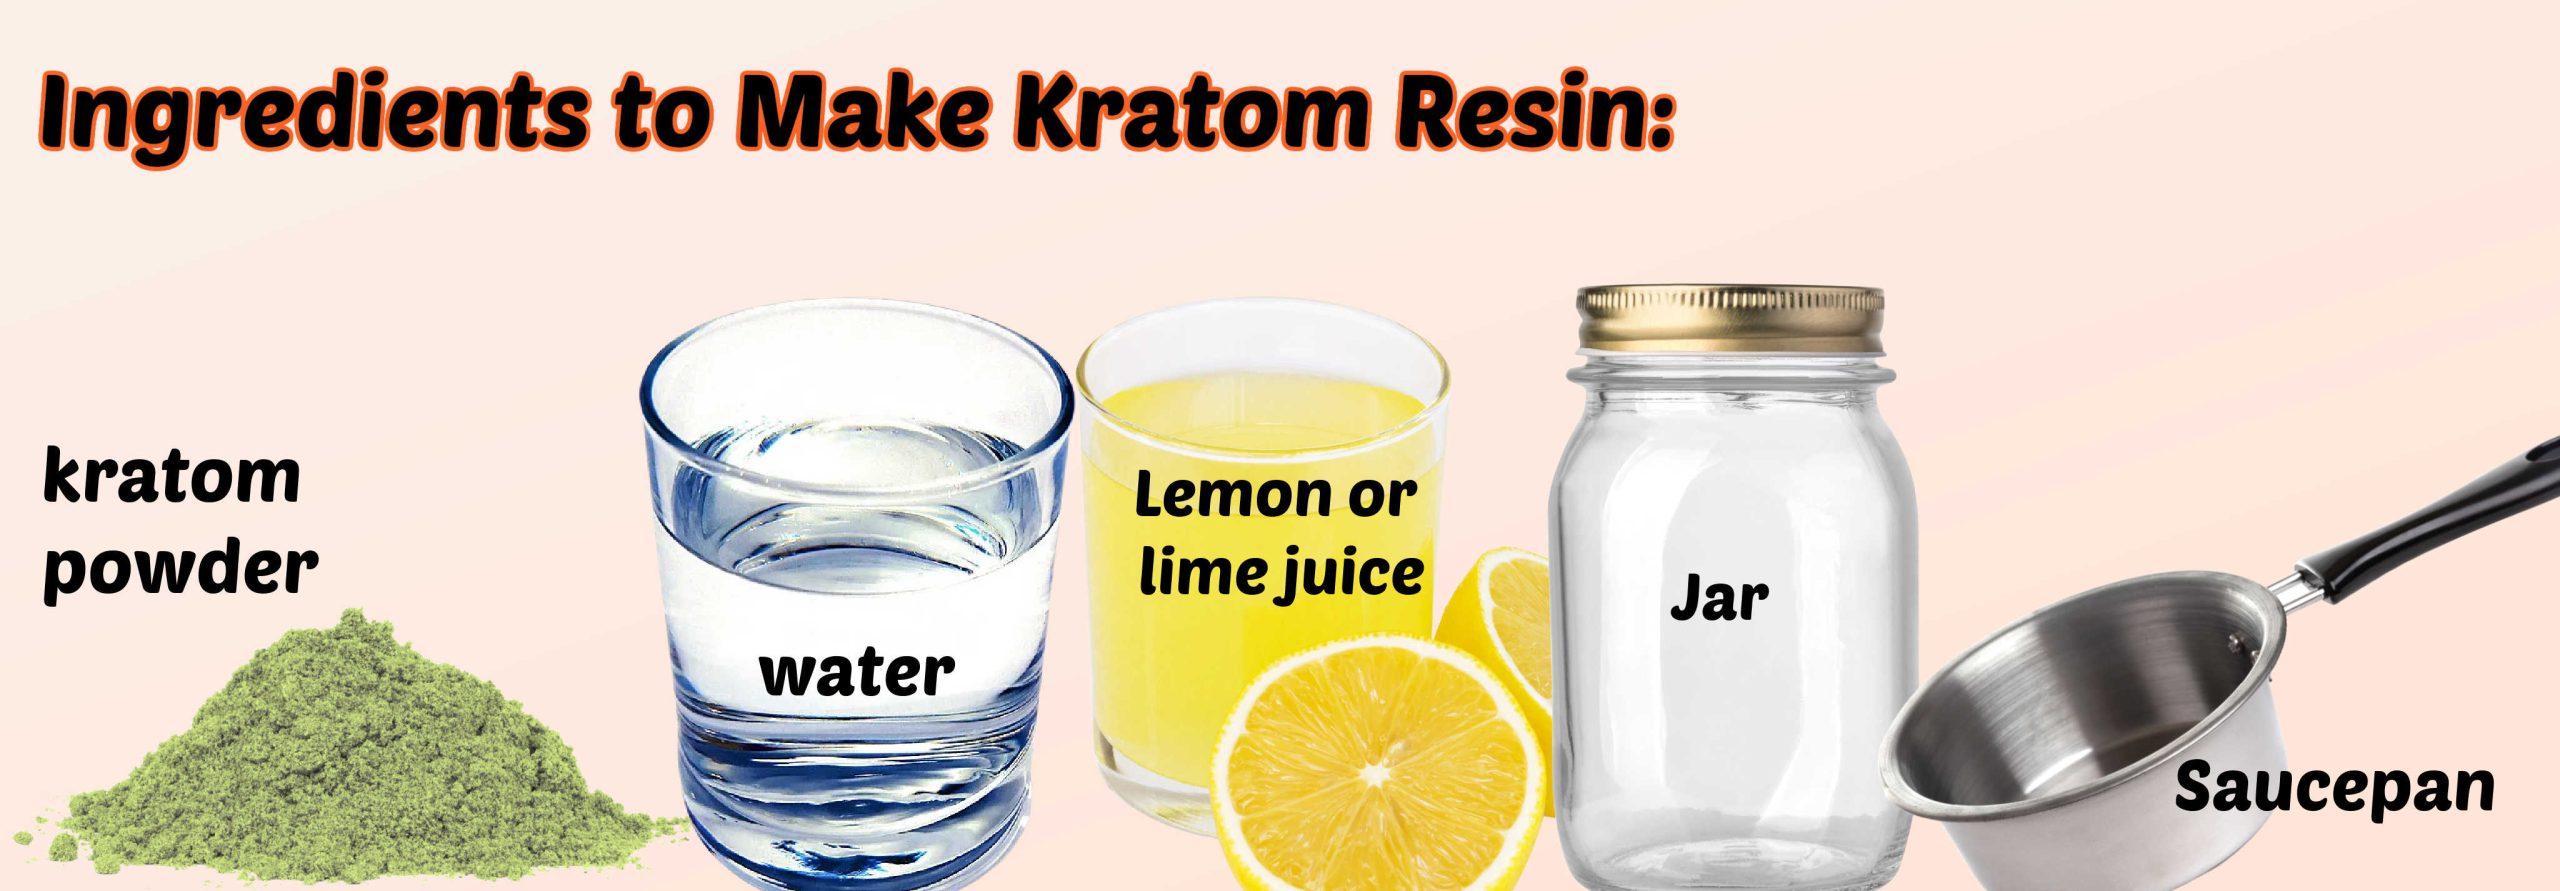 image of kratom resin ingredients